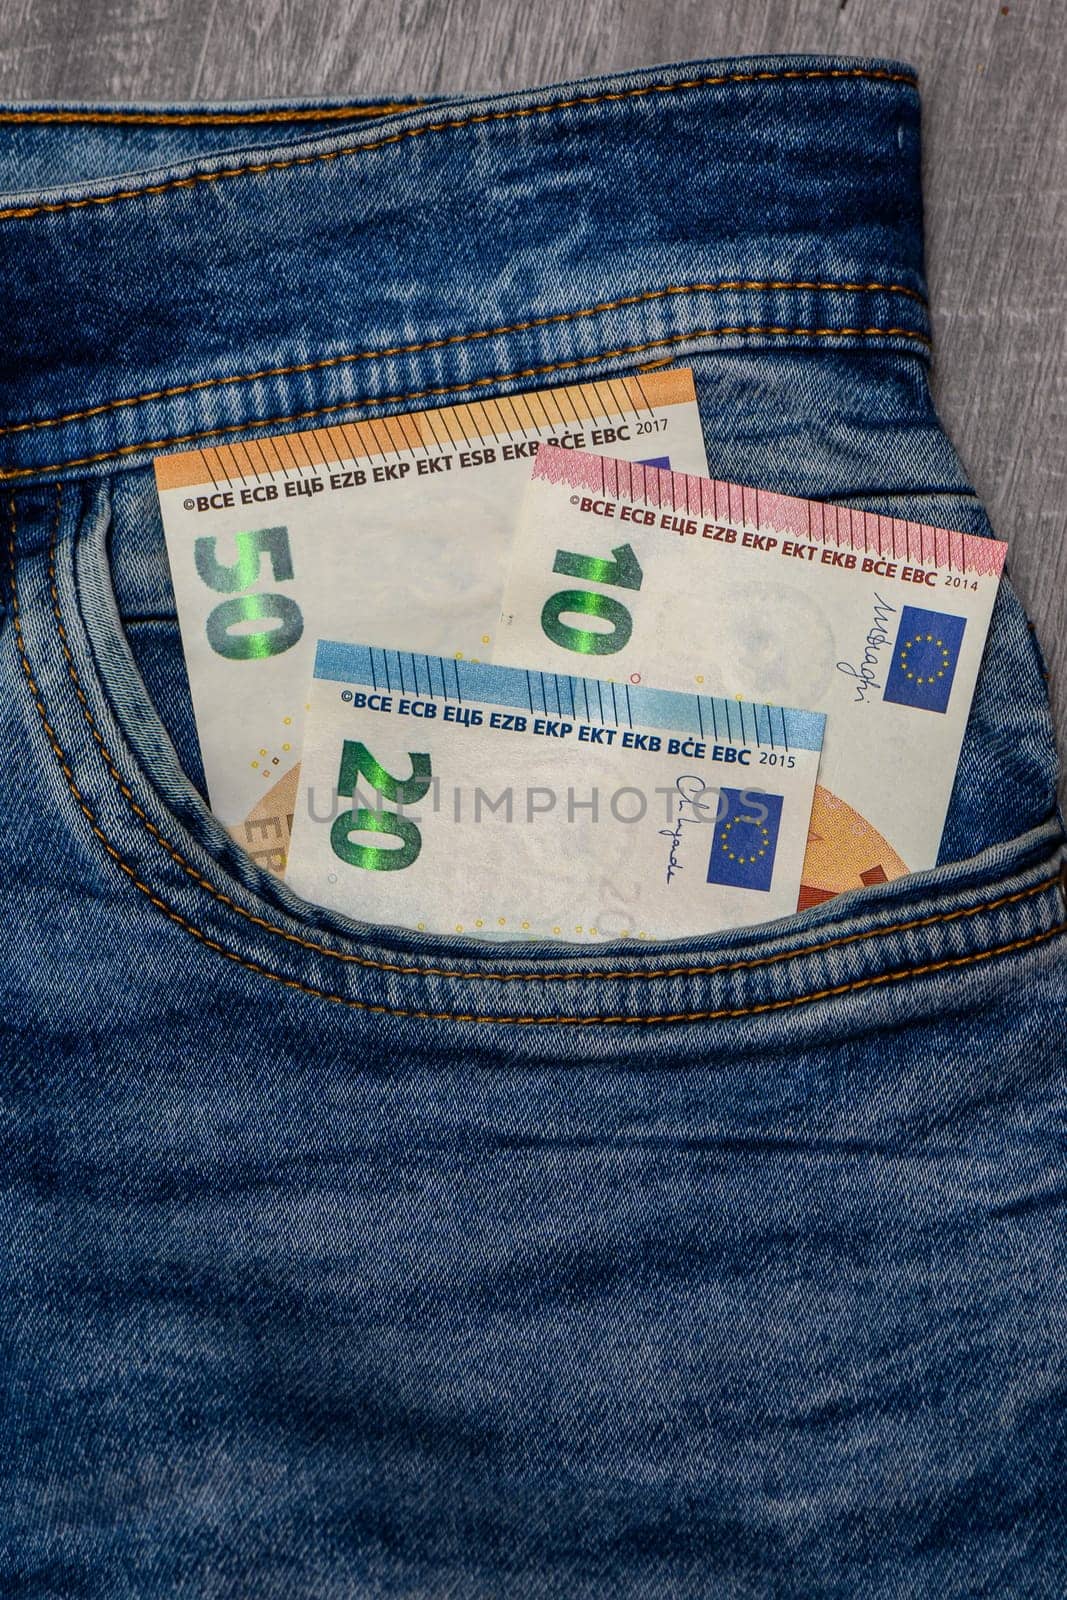 Cash Paper Currency Inside Of Denim Pocket